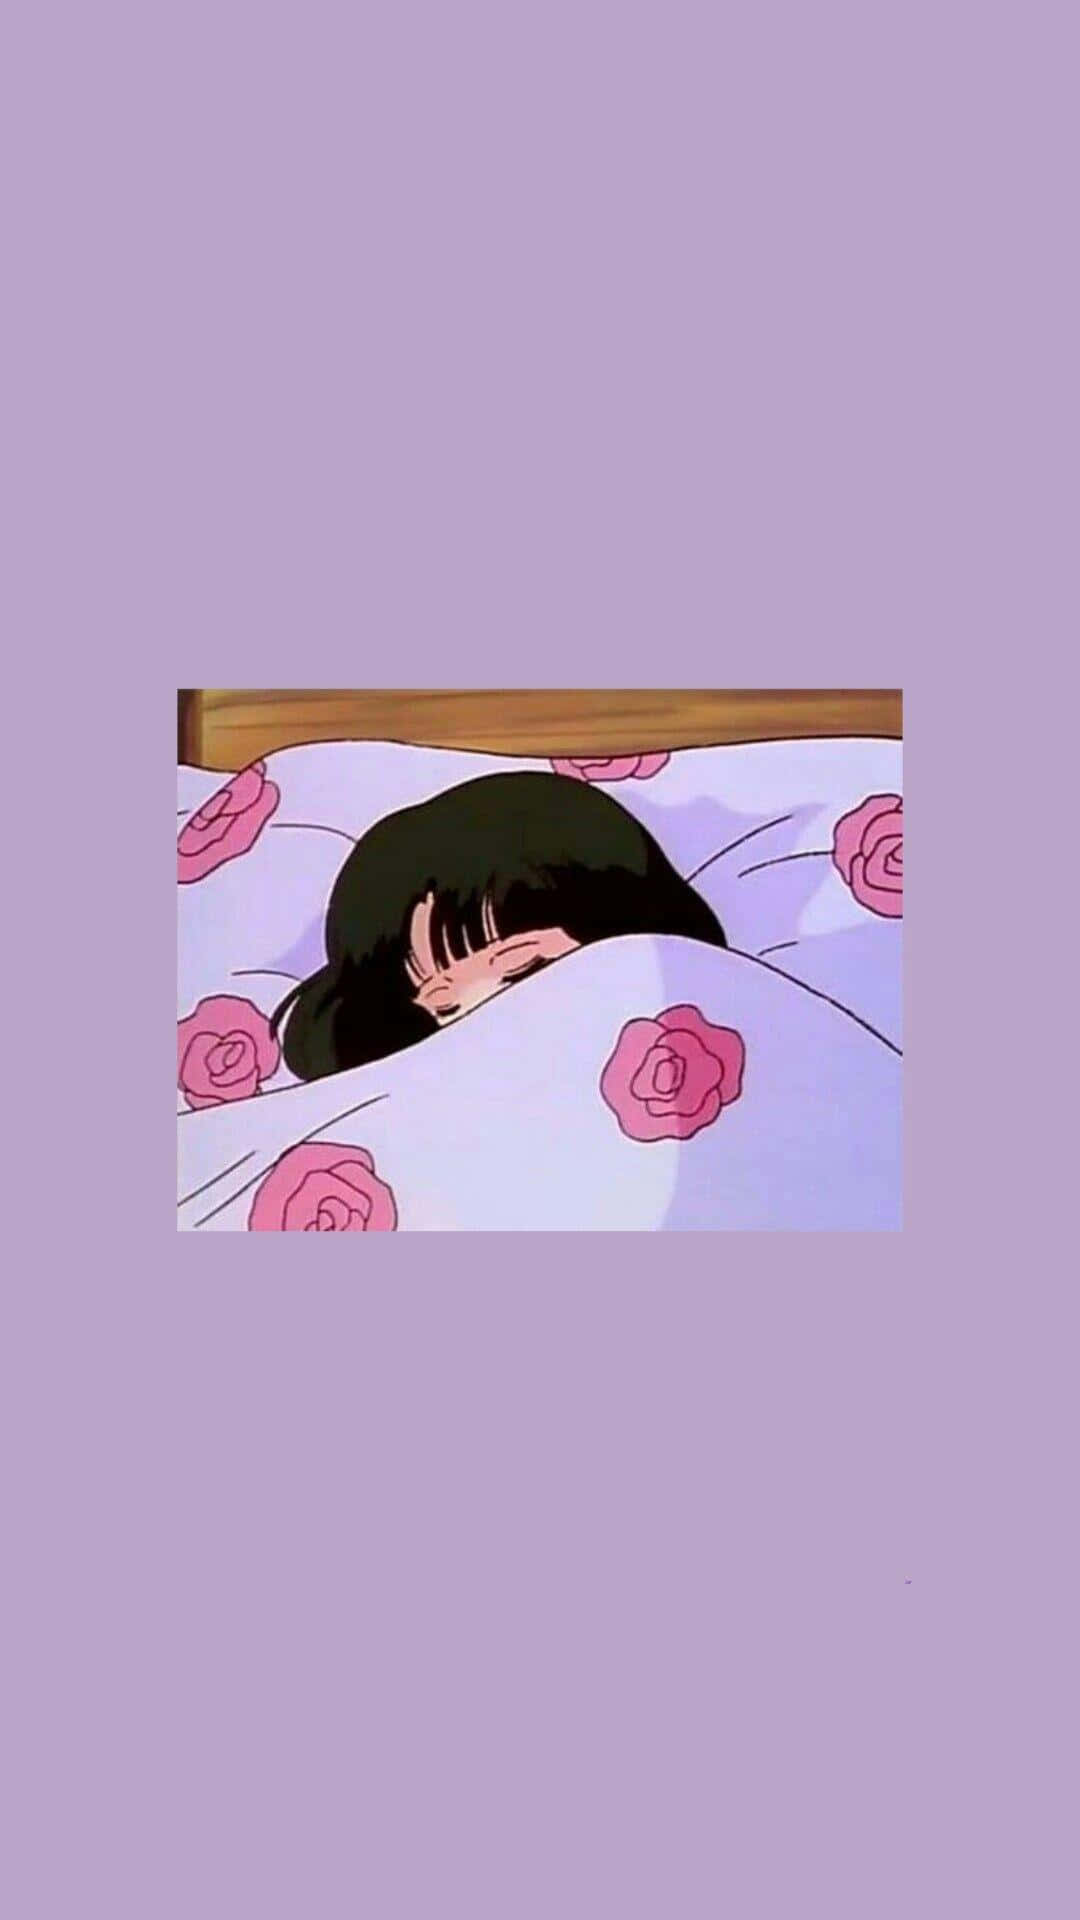 En pige ligger i sengen med en pink pude. Wallpaper